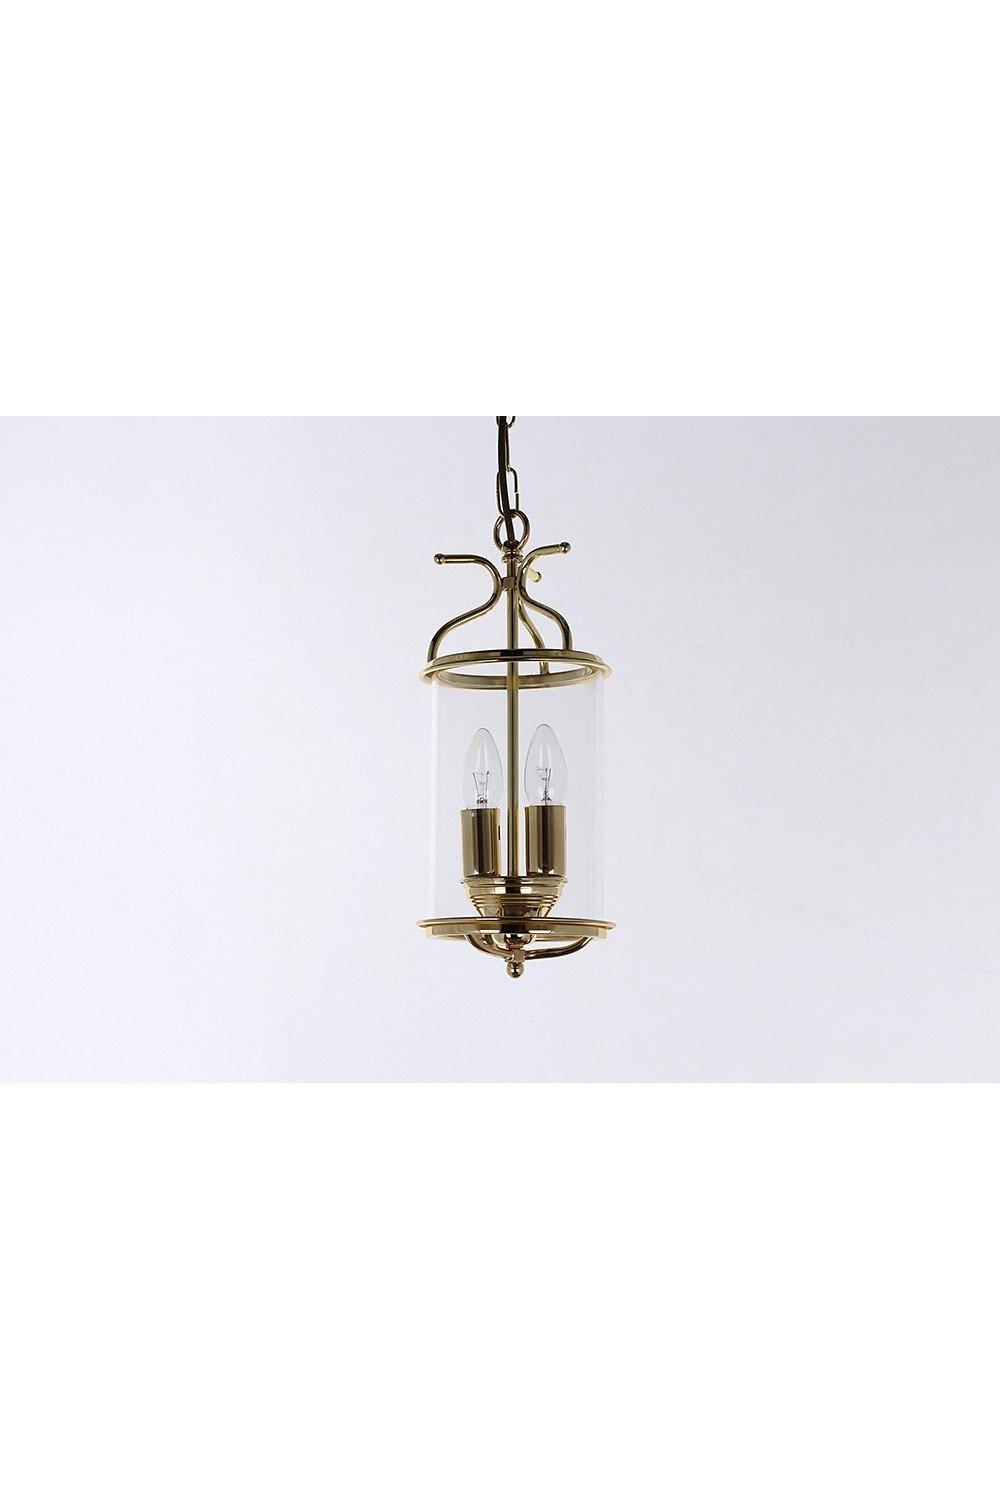 Winchester Blown Glass Brass Lanterns Pendant Ceiling Light